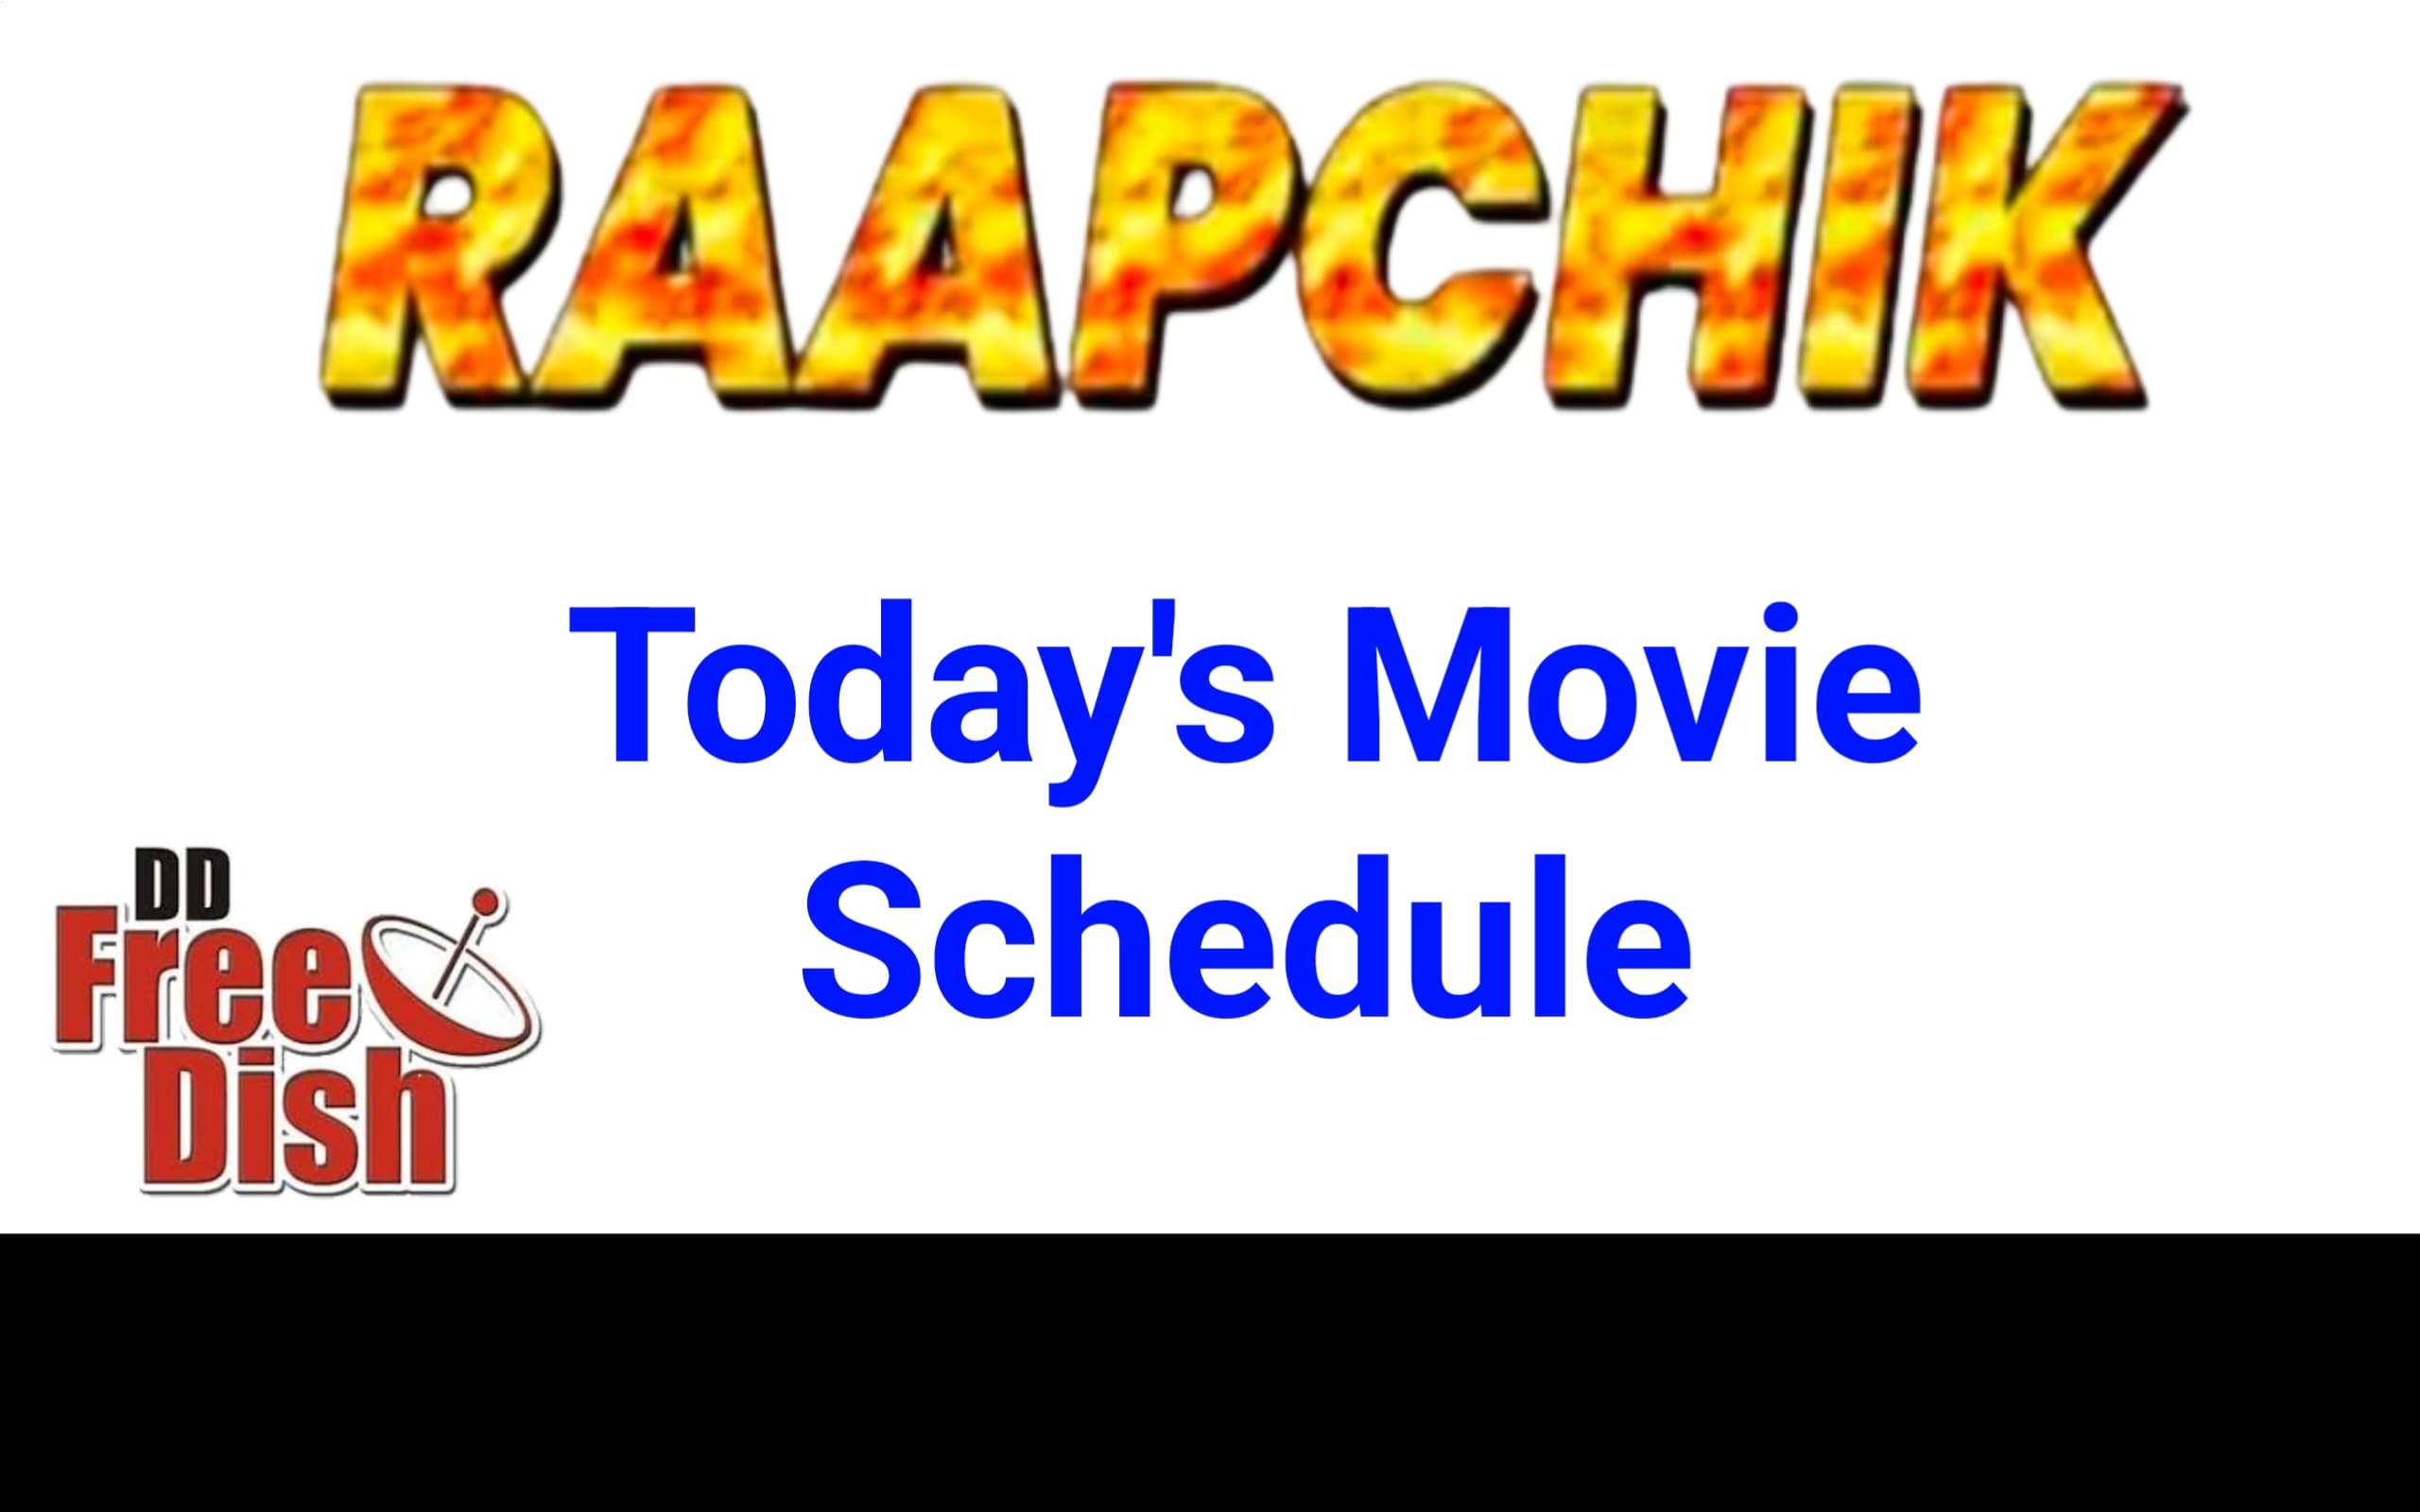 Raapchik Channel Schedule Today || Raapchik TV Channel